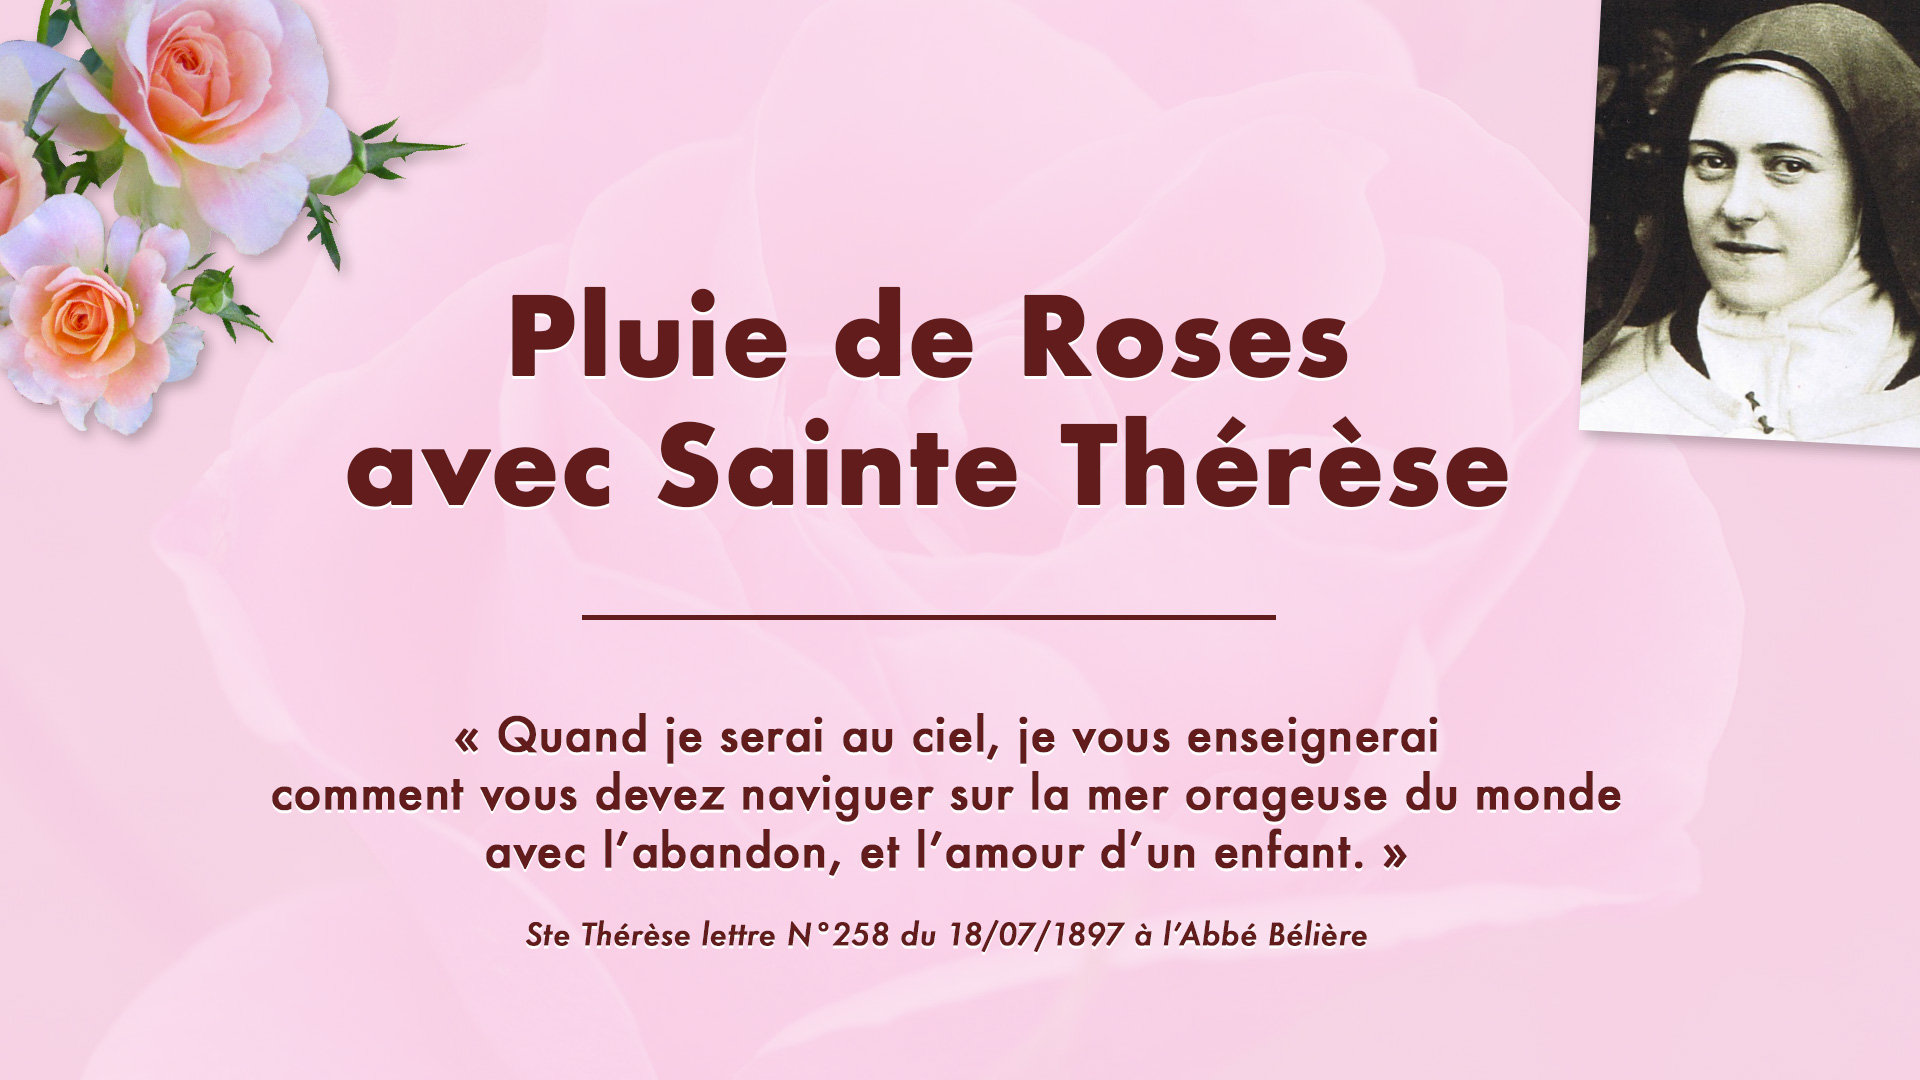 Pluie de Roses avec sainte Thérèse le 6 octobre 2018 à Alençon (61)